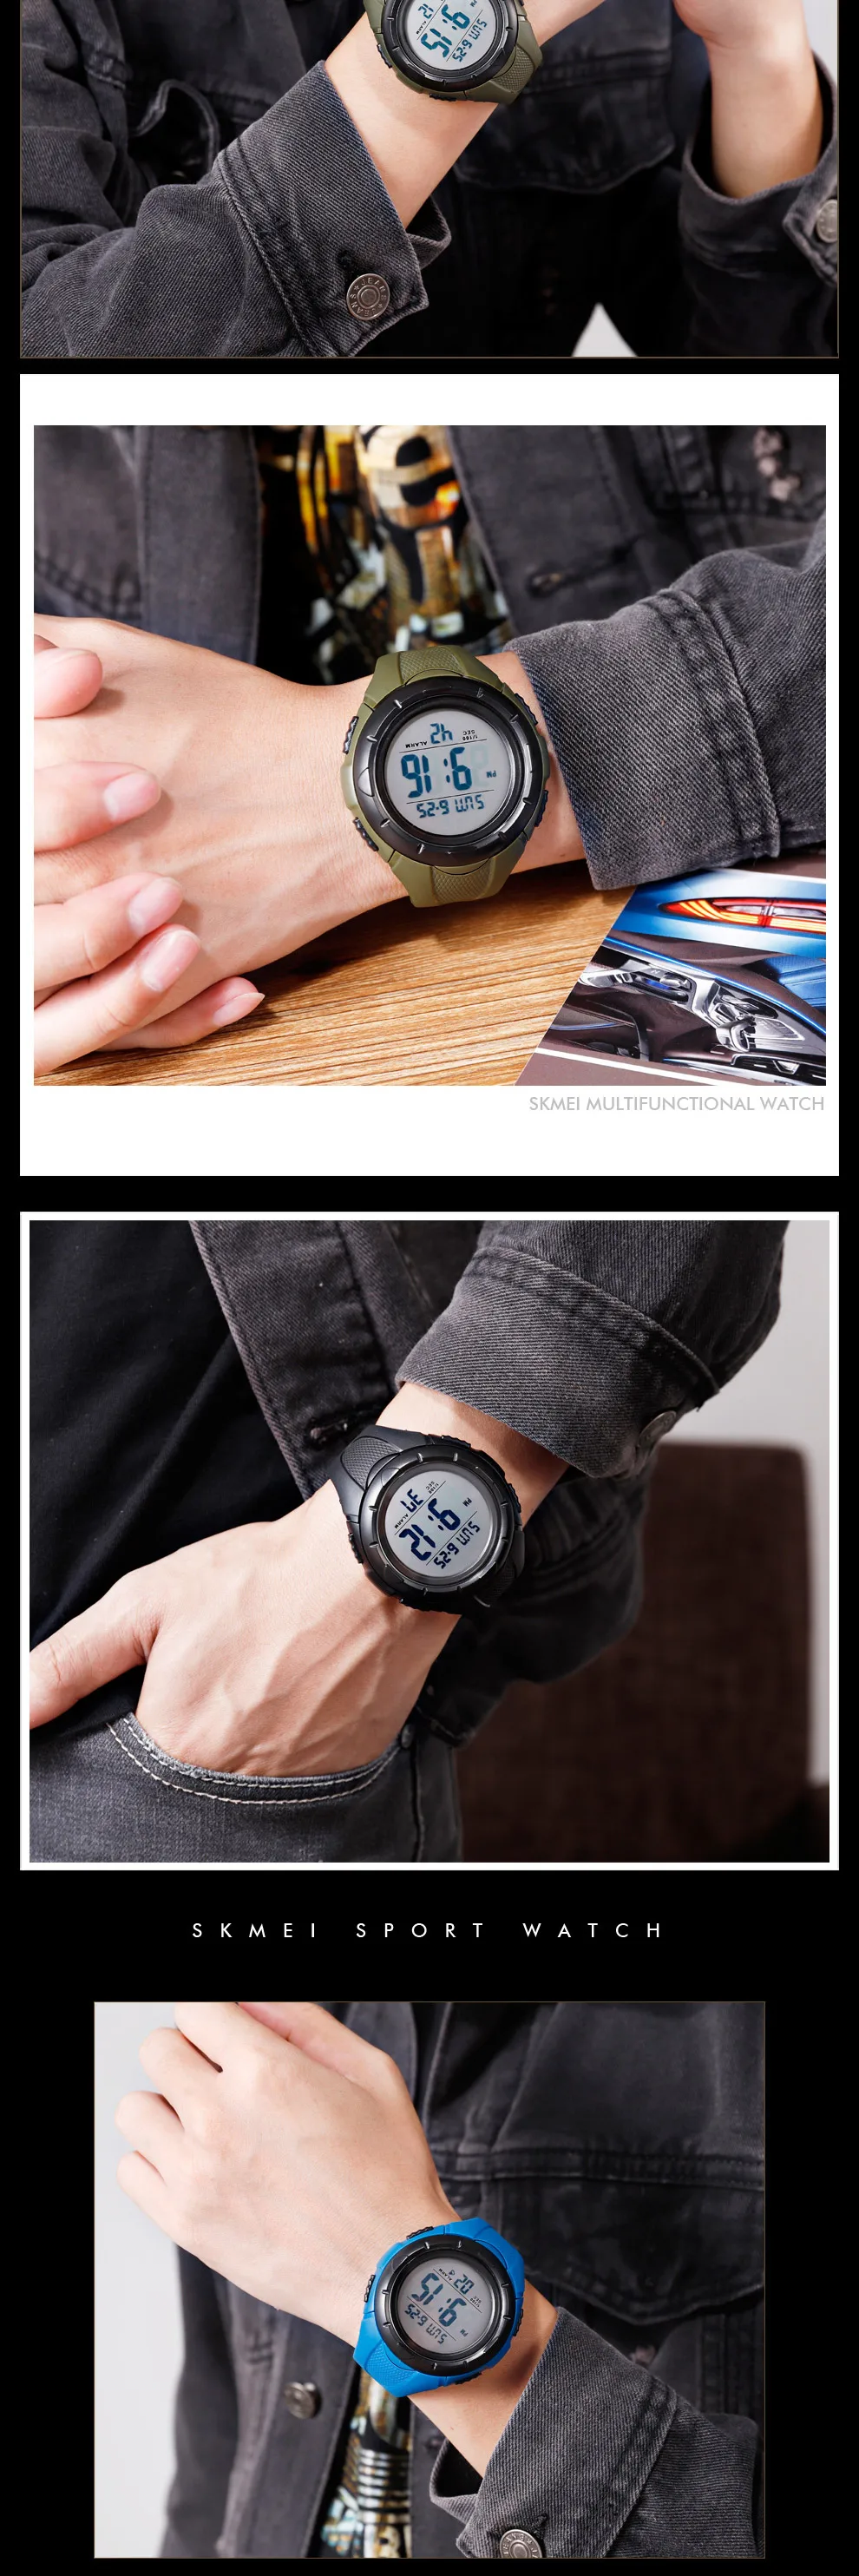 SKMEI новые спортивные часы для мужчин Chrono уличные модные электронные цифровые наручные часы водонепроницаемый светильник дисплей будильник часы montre homme